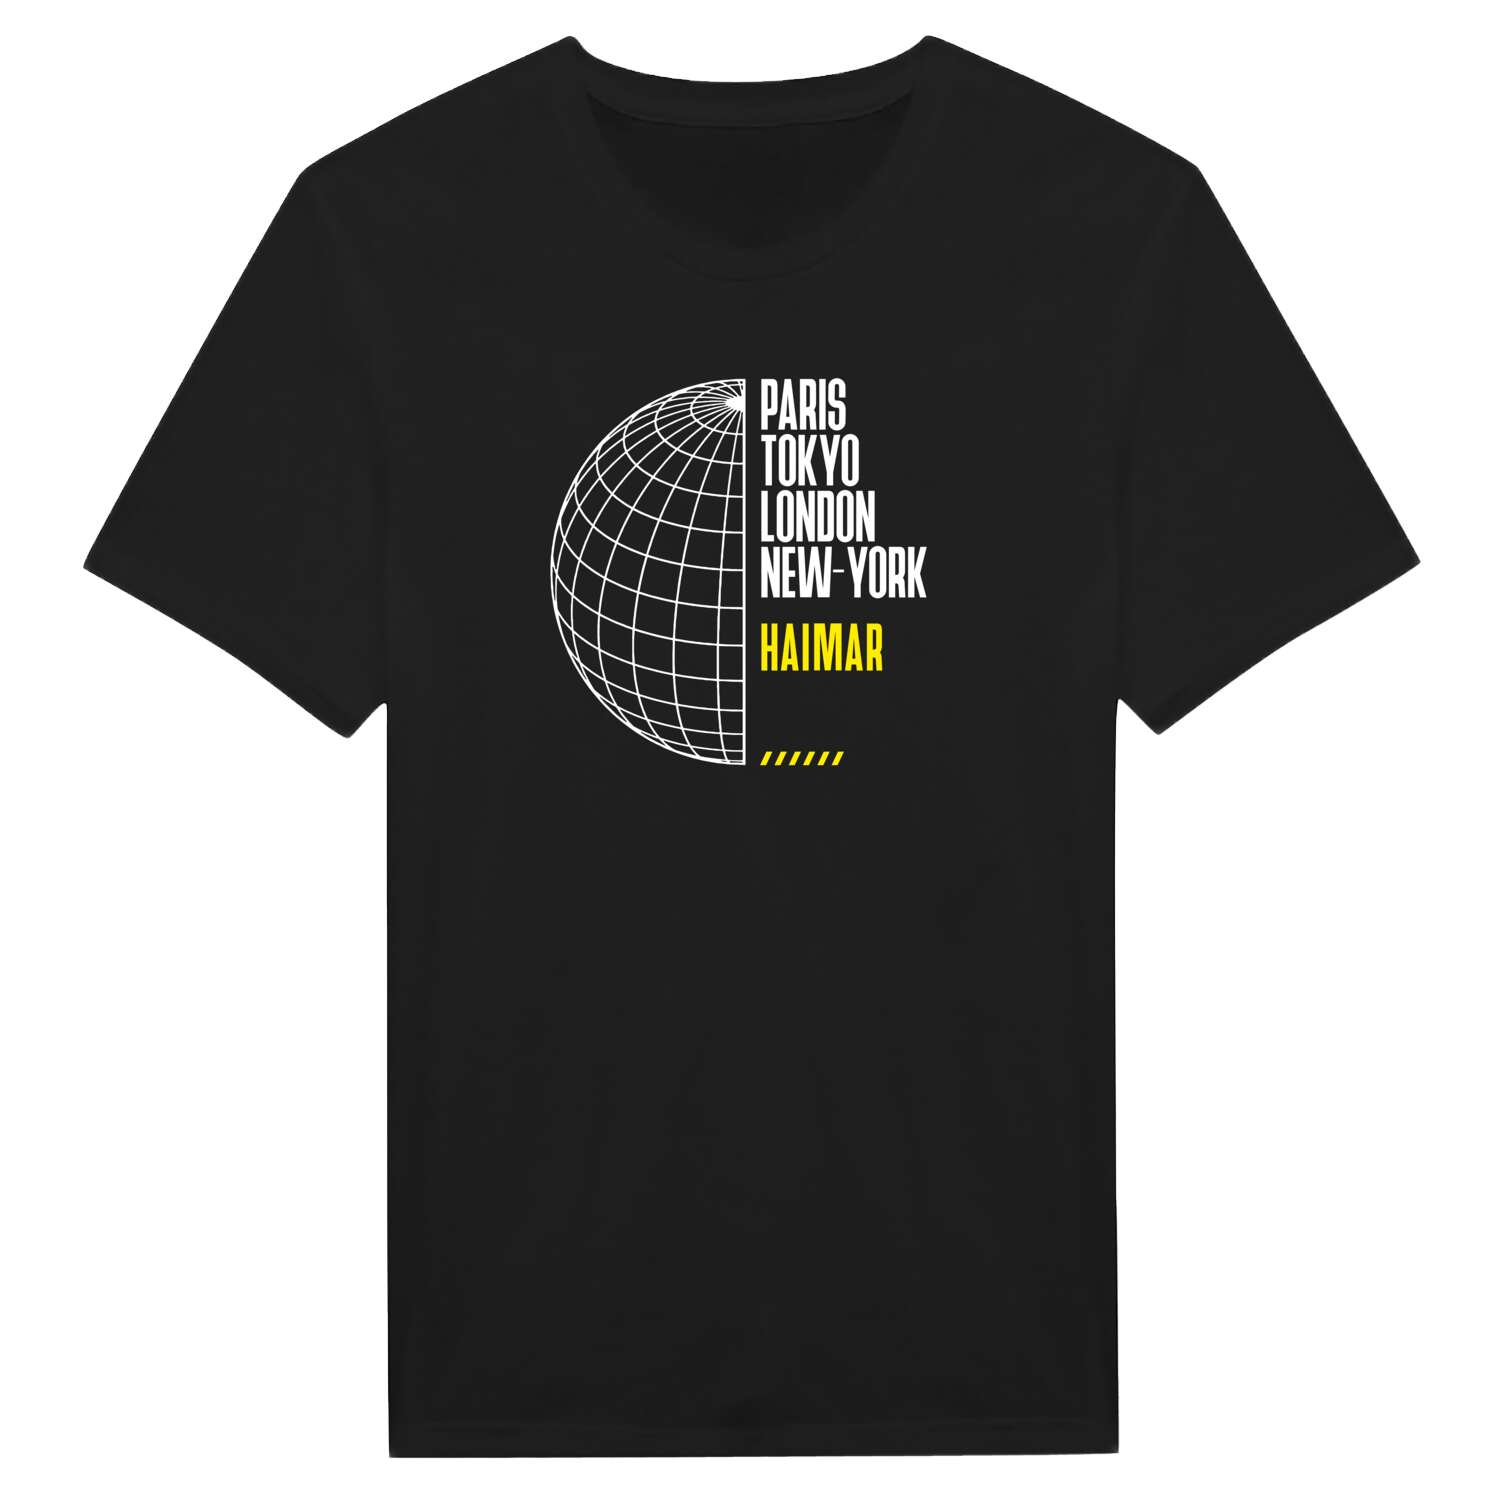 Haimar T-Shirt »Paris Tokyo London«